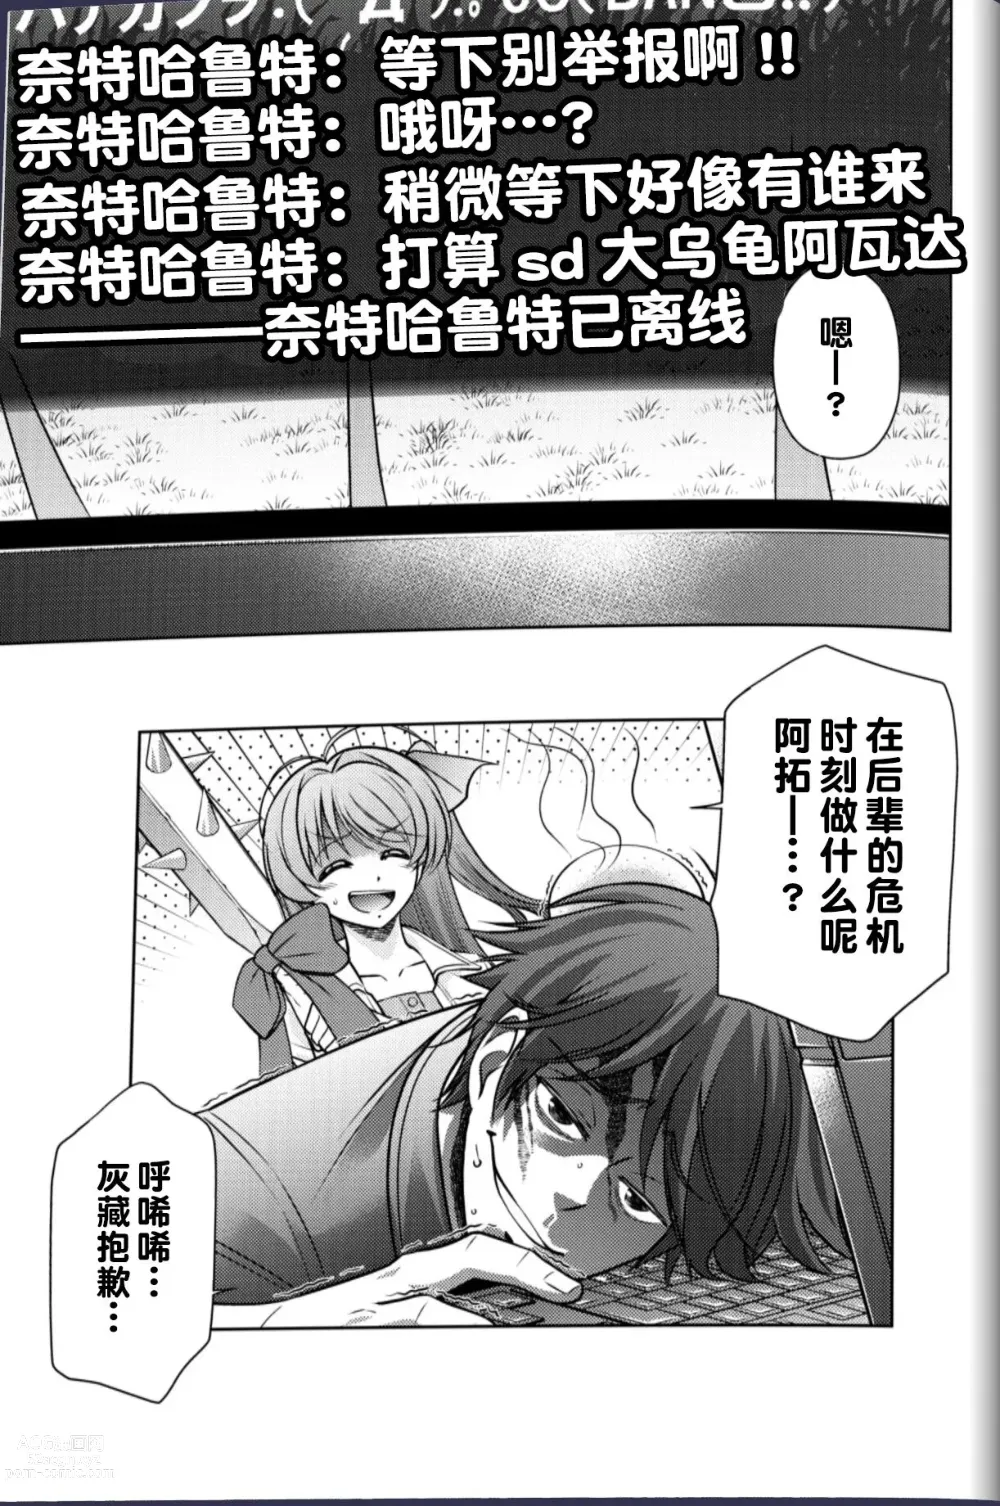 Page 16 of doujinshi #CHAOS;CHILD カオチャ・１８禁・香月本 - Eibon的漫画 - pixiv